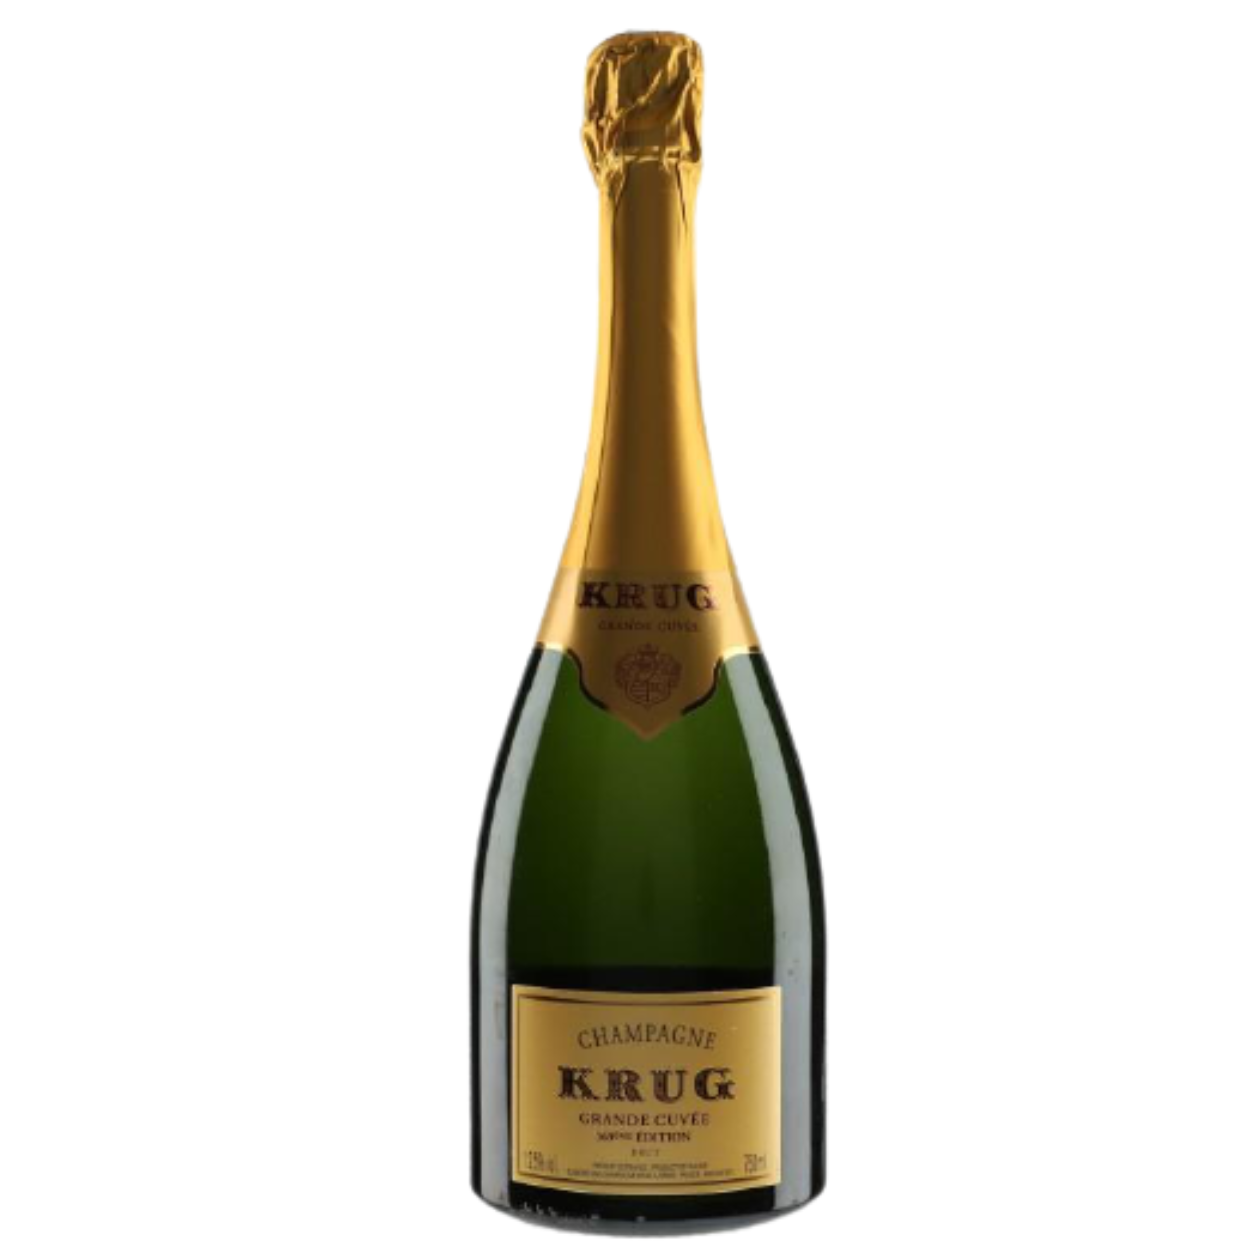 eme Connection | Krug Champagne Wine 171 Edition The Cuvee Grande France Brut NV